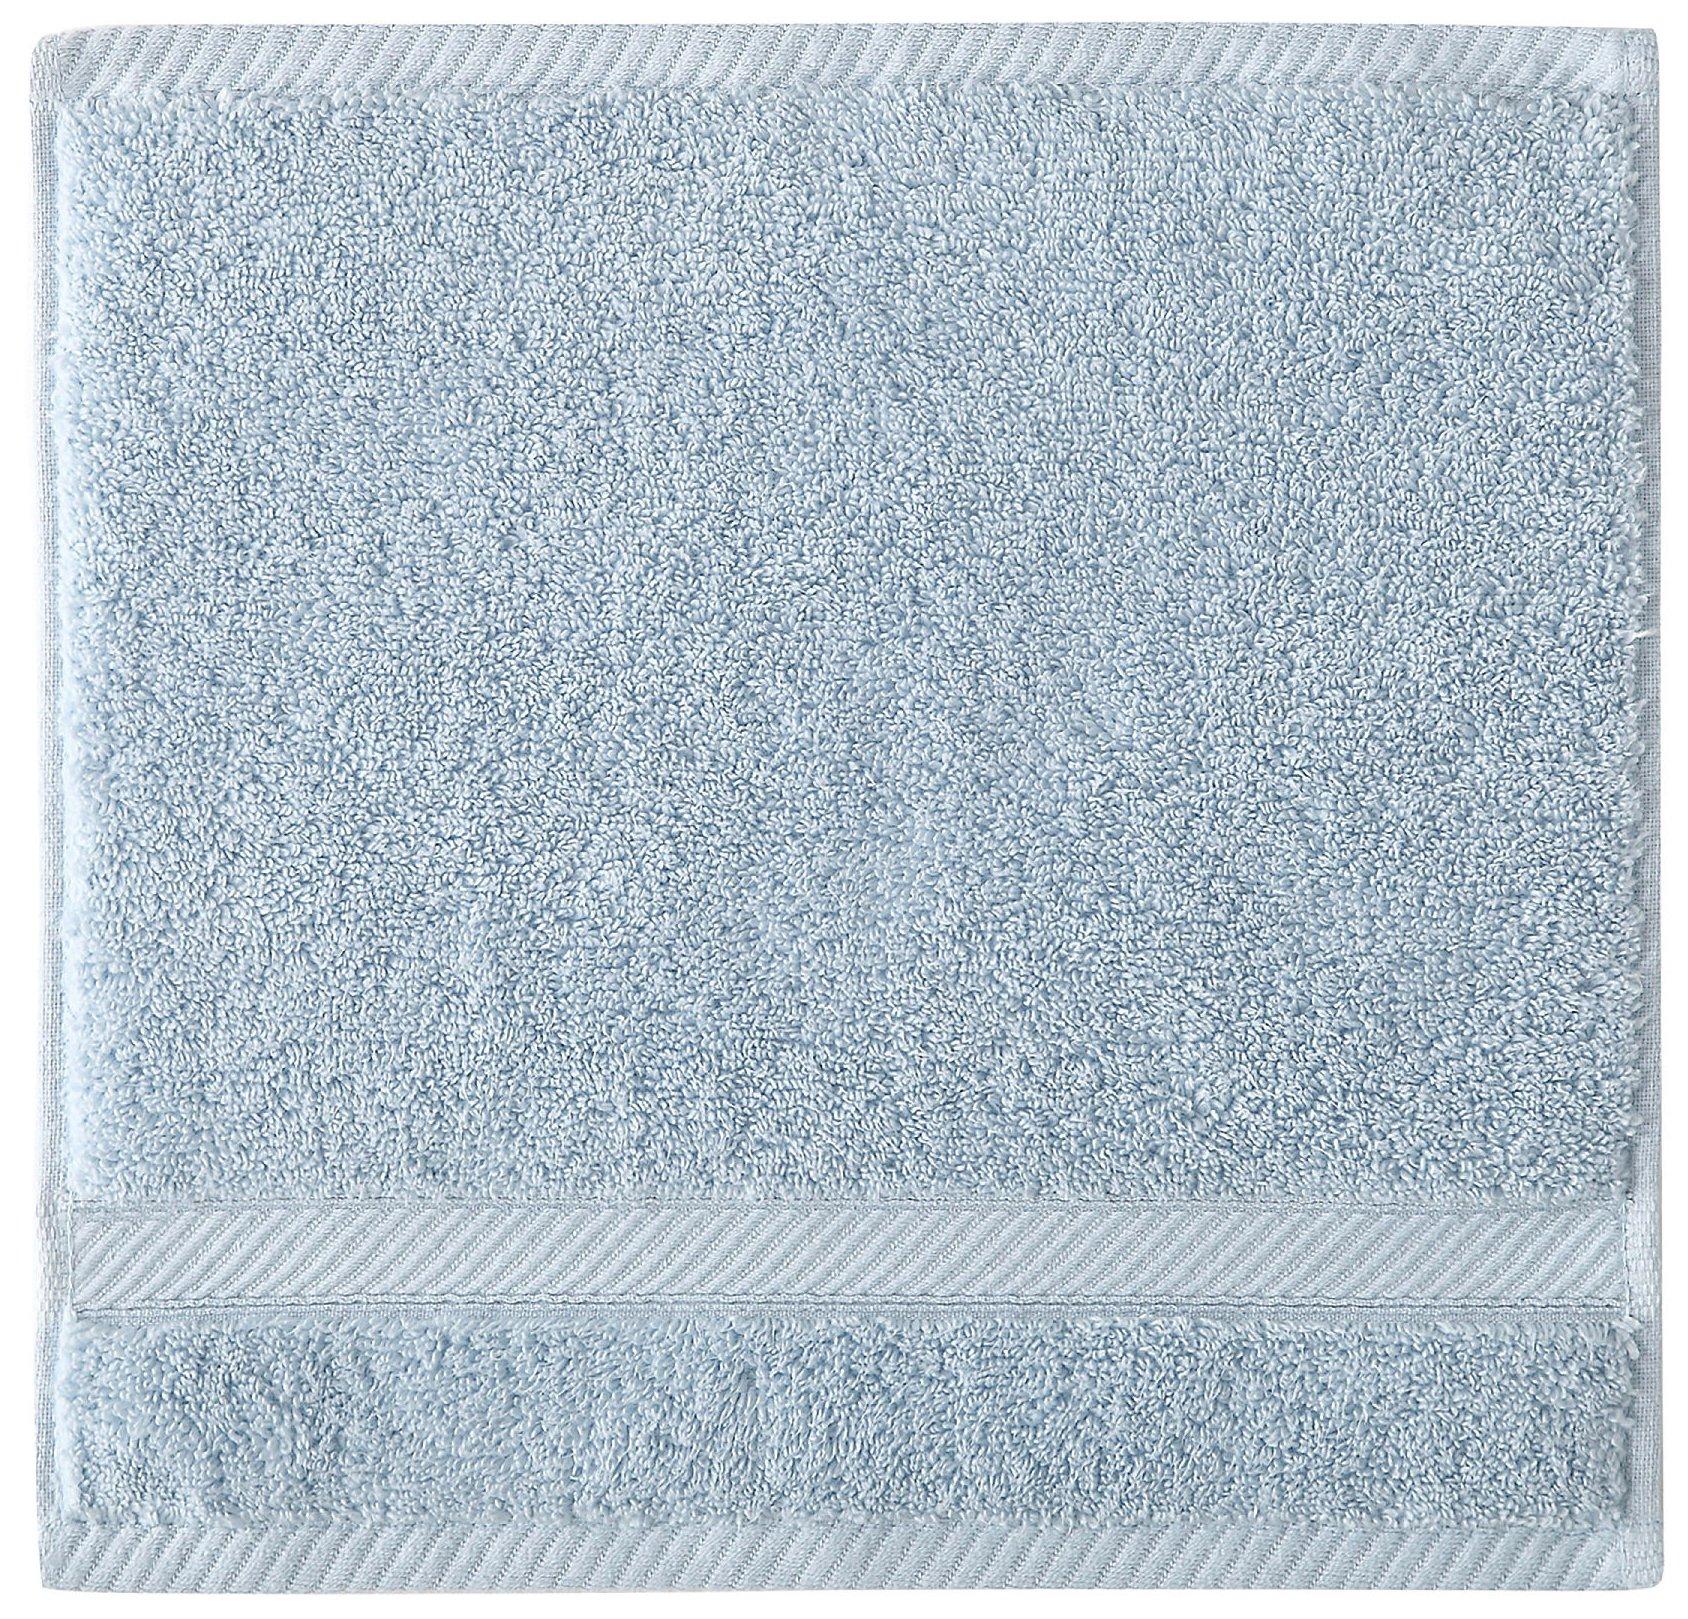 Wamsutta 6-Piece Hygro Duet Bath Towel Set Includes Washcloths